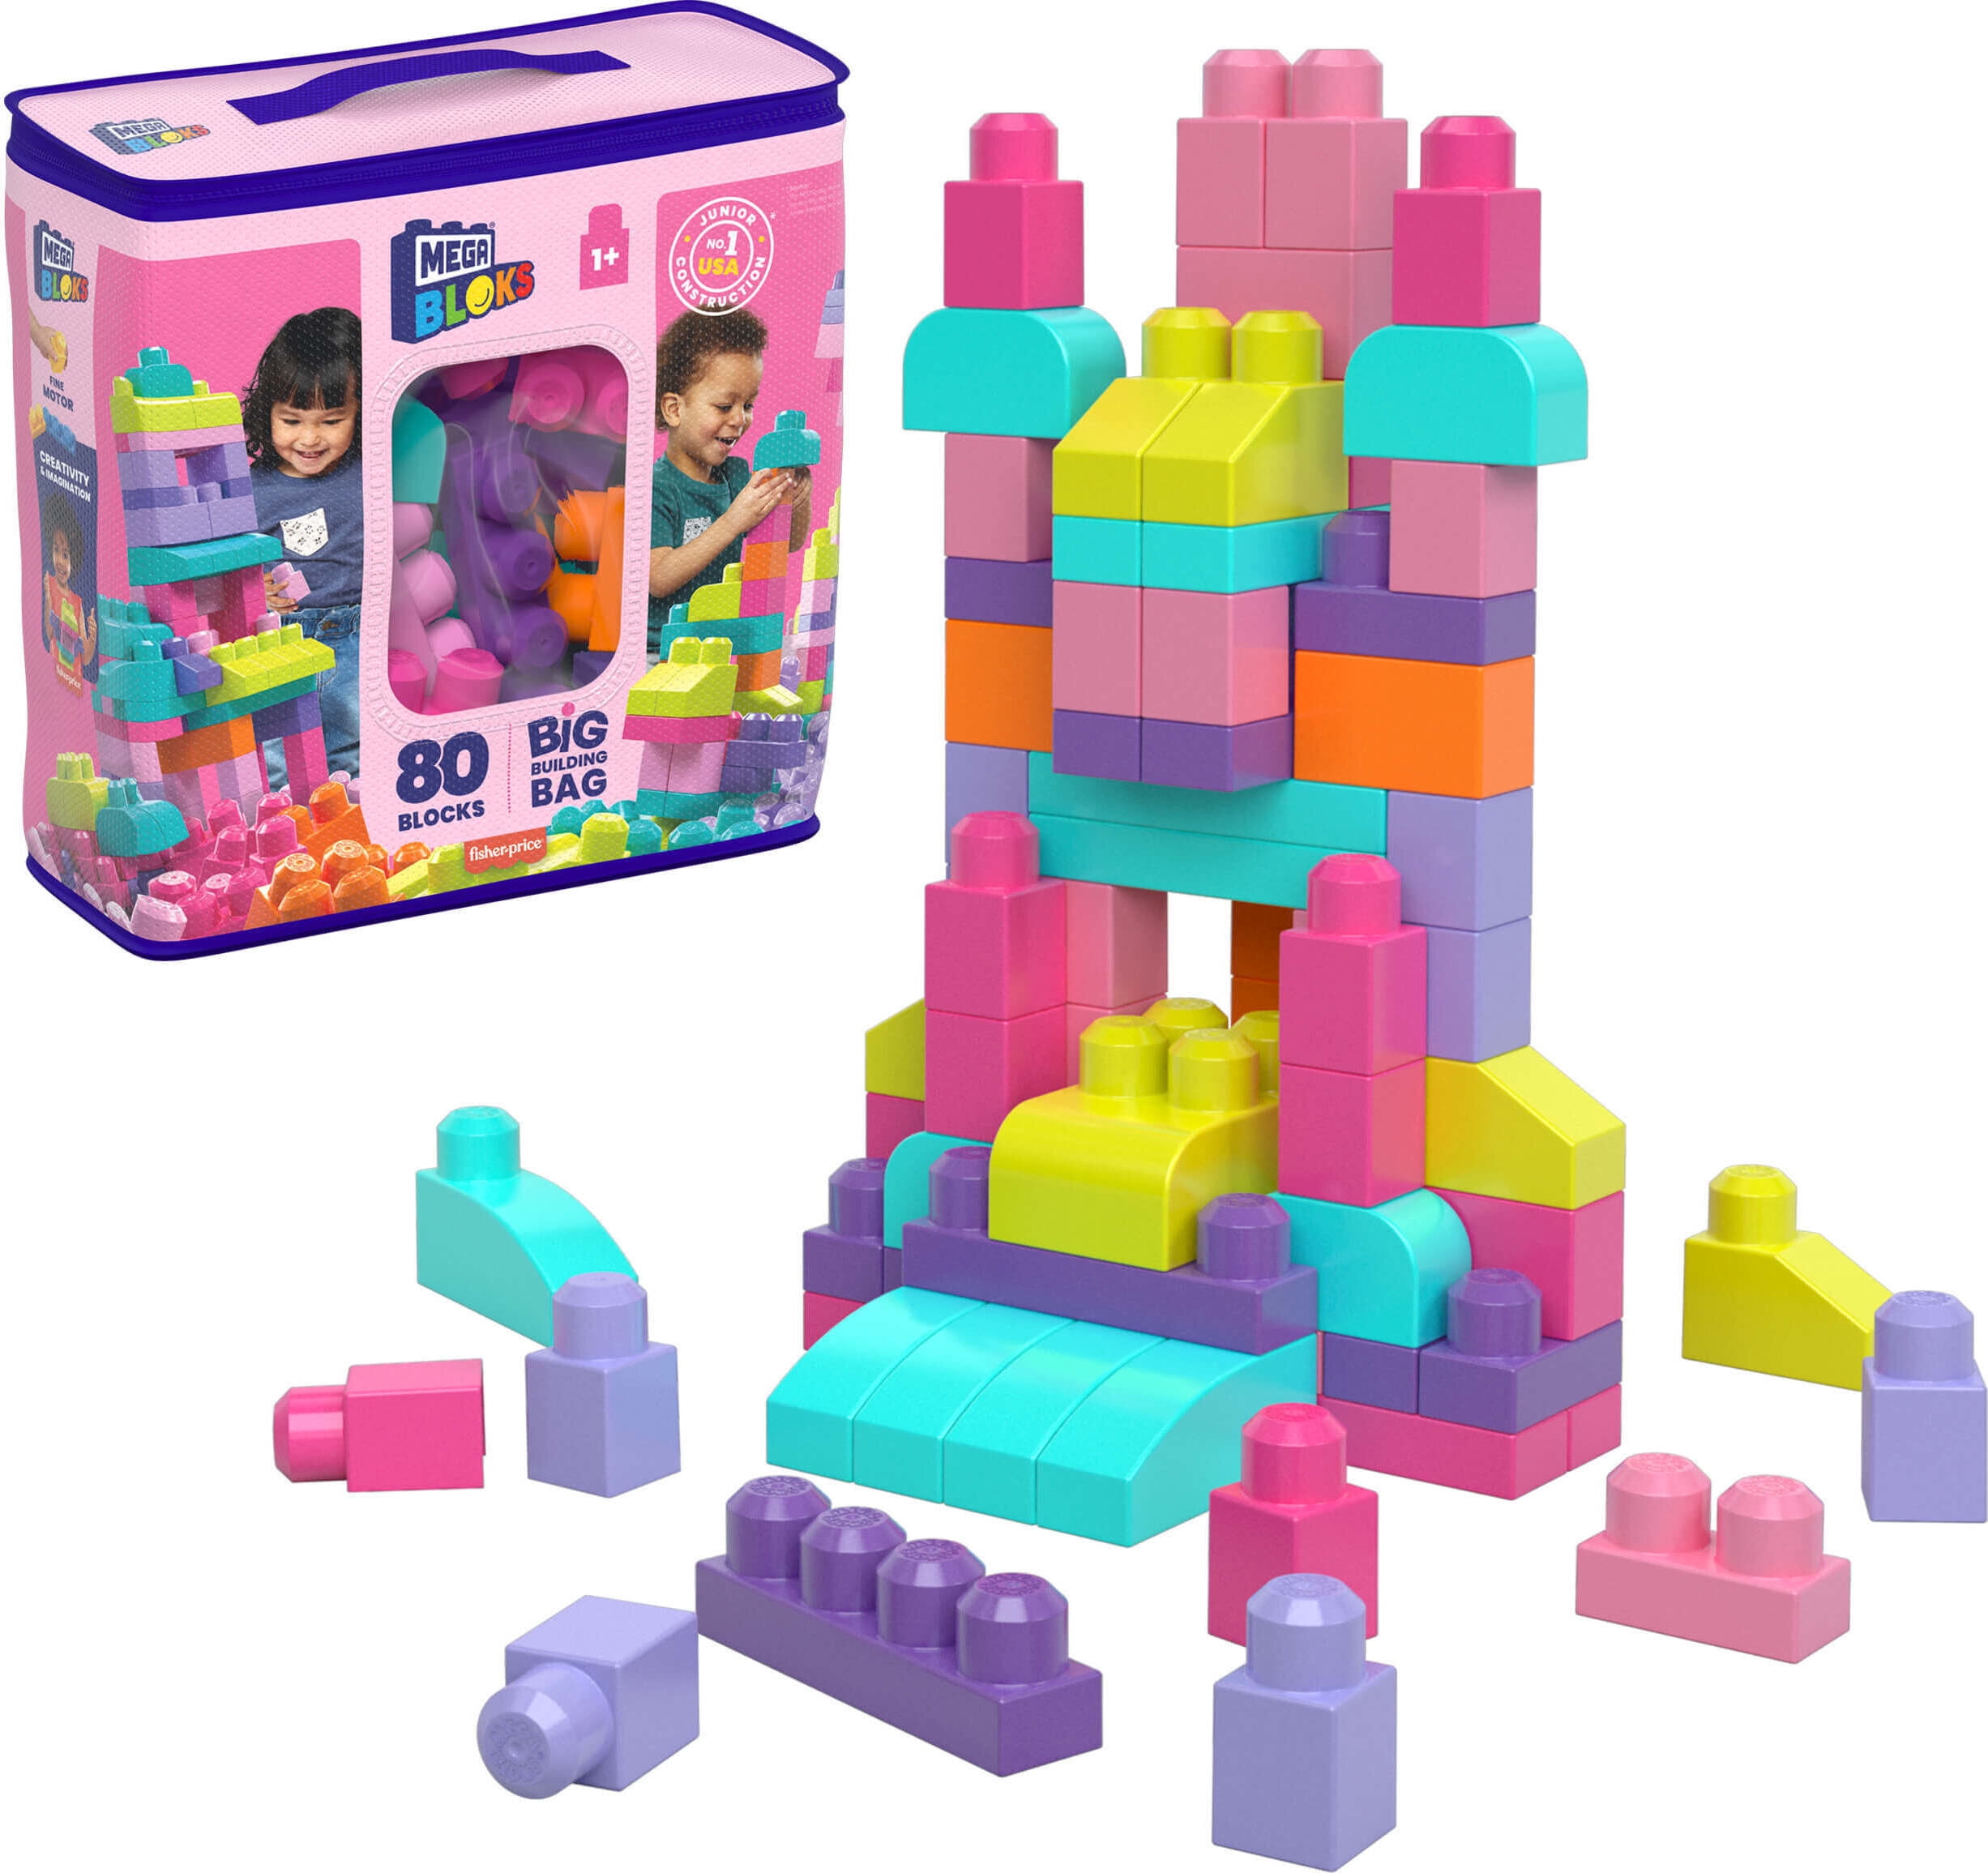 lytter Ambassadør vare MEGA BLOKS Fisher-Price Toy Blocks Pink Big Building Bag with Storage (80  Pieces) for Toddler - Walmart.com